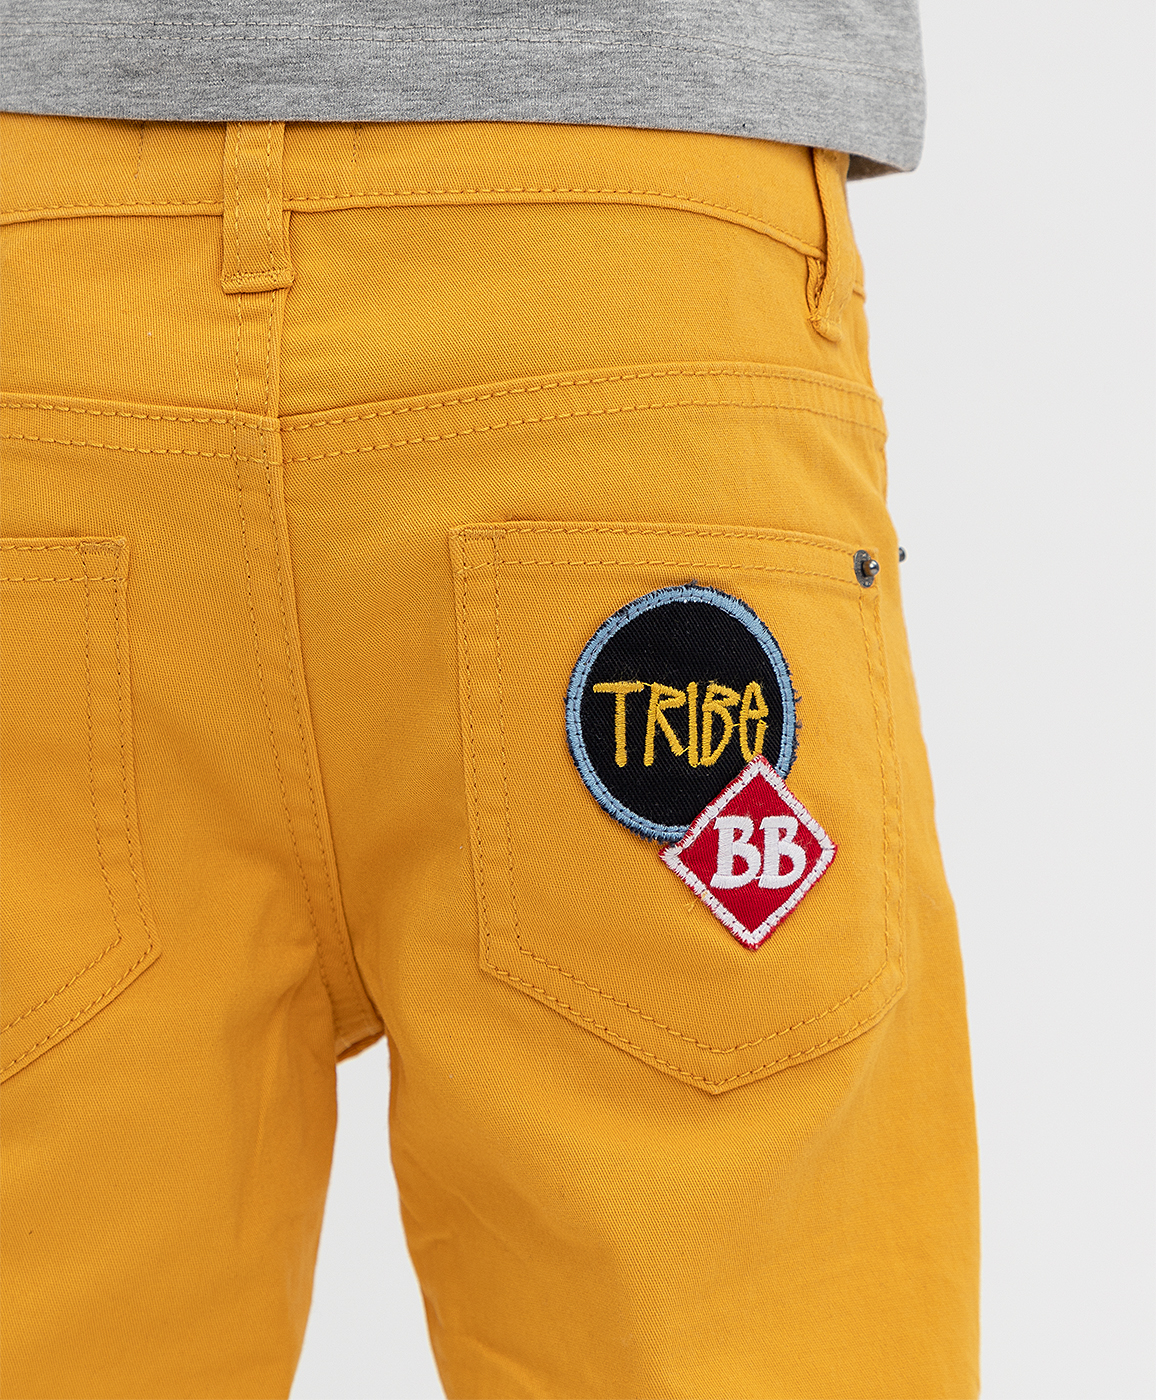 Оранжевые брюки Button Blue 121BBBMC63123200, размер 128, цвет оранжевый regular fit / прямые - фото 3